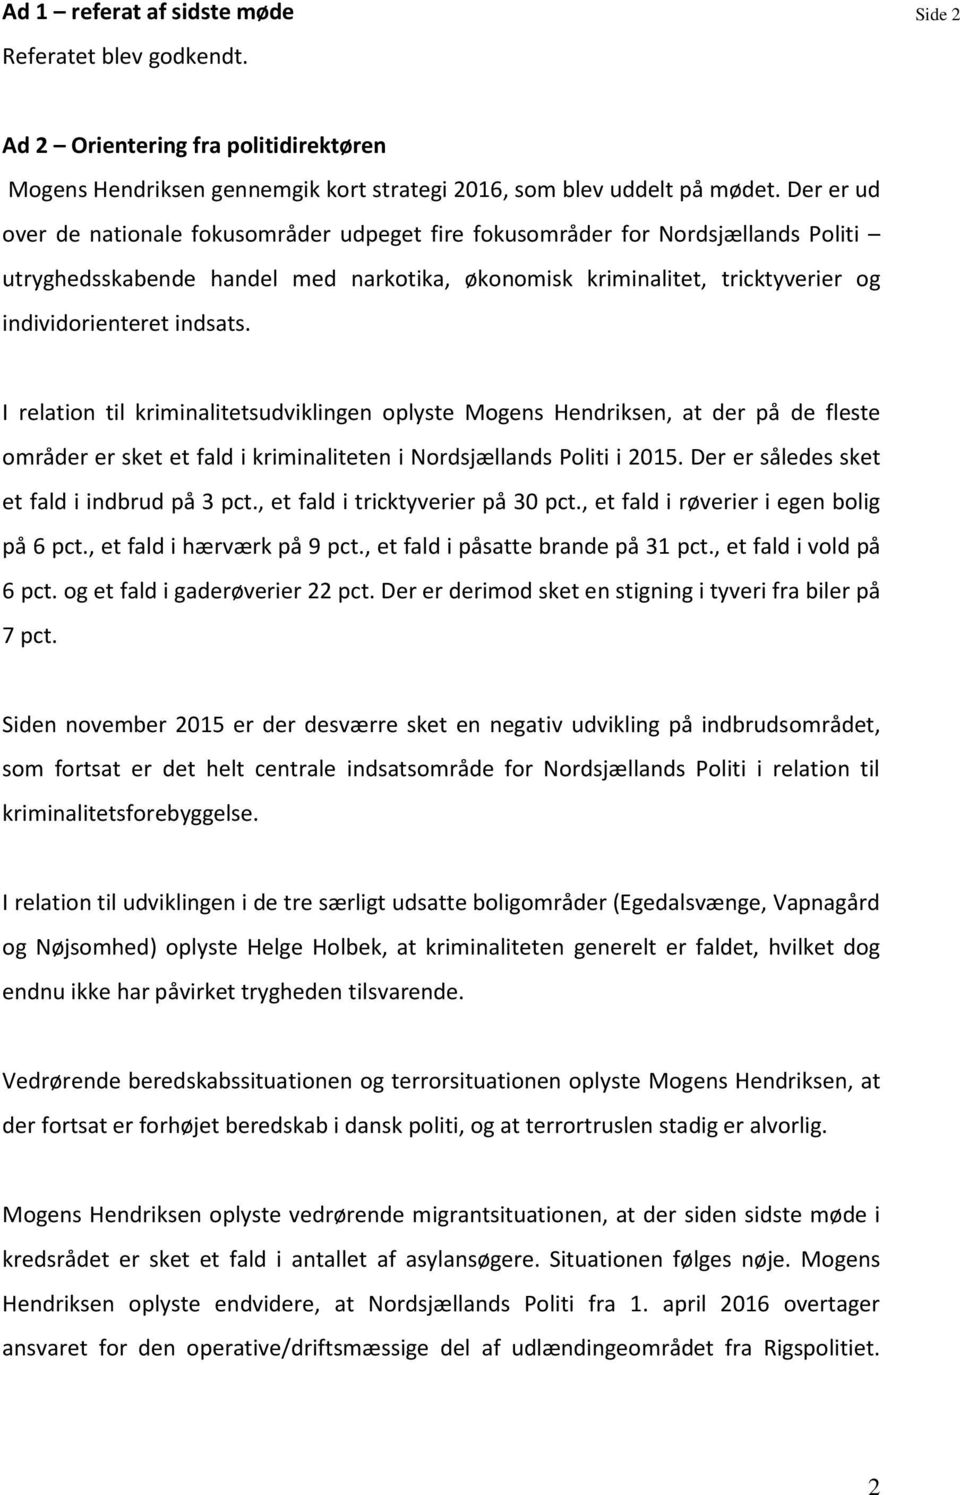 I relation til kriminalitetsudviklingen oplyste Mogens Hendriksen, at der på de fleste områder er sket et fald i kriminaliteten i Nordsjællands Politi i 2015.